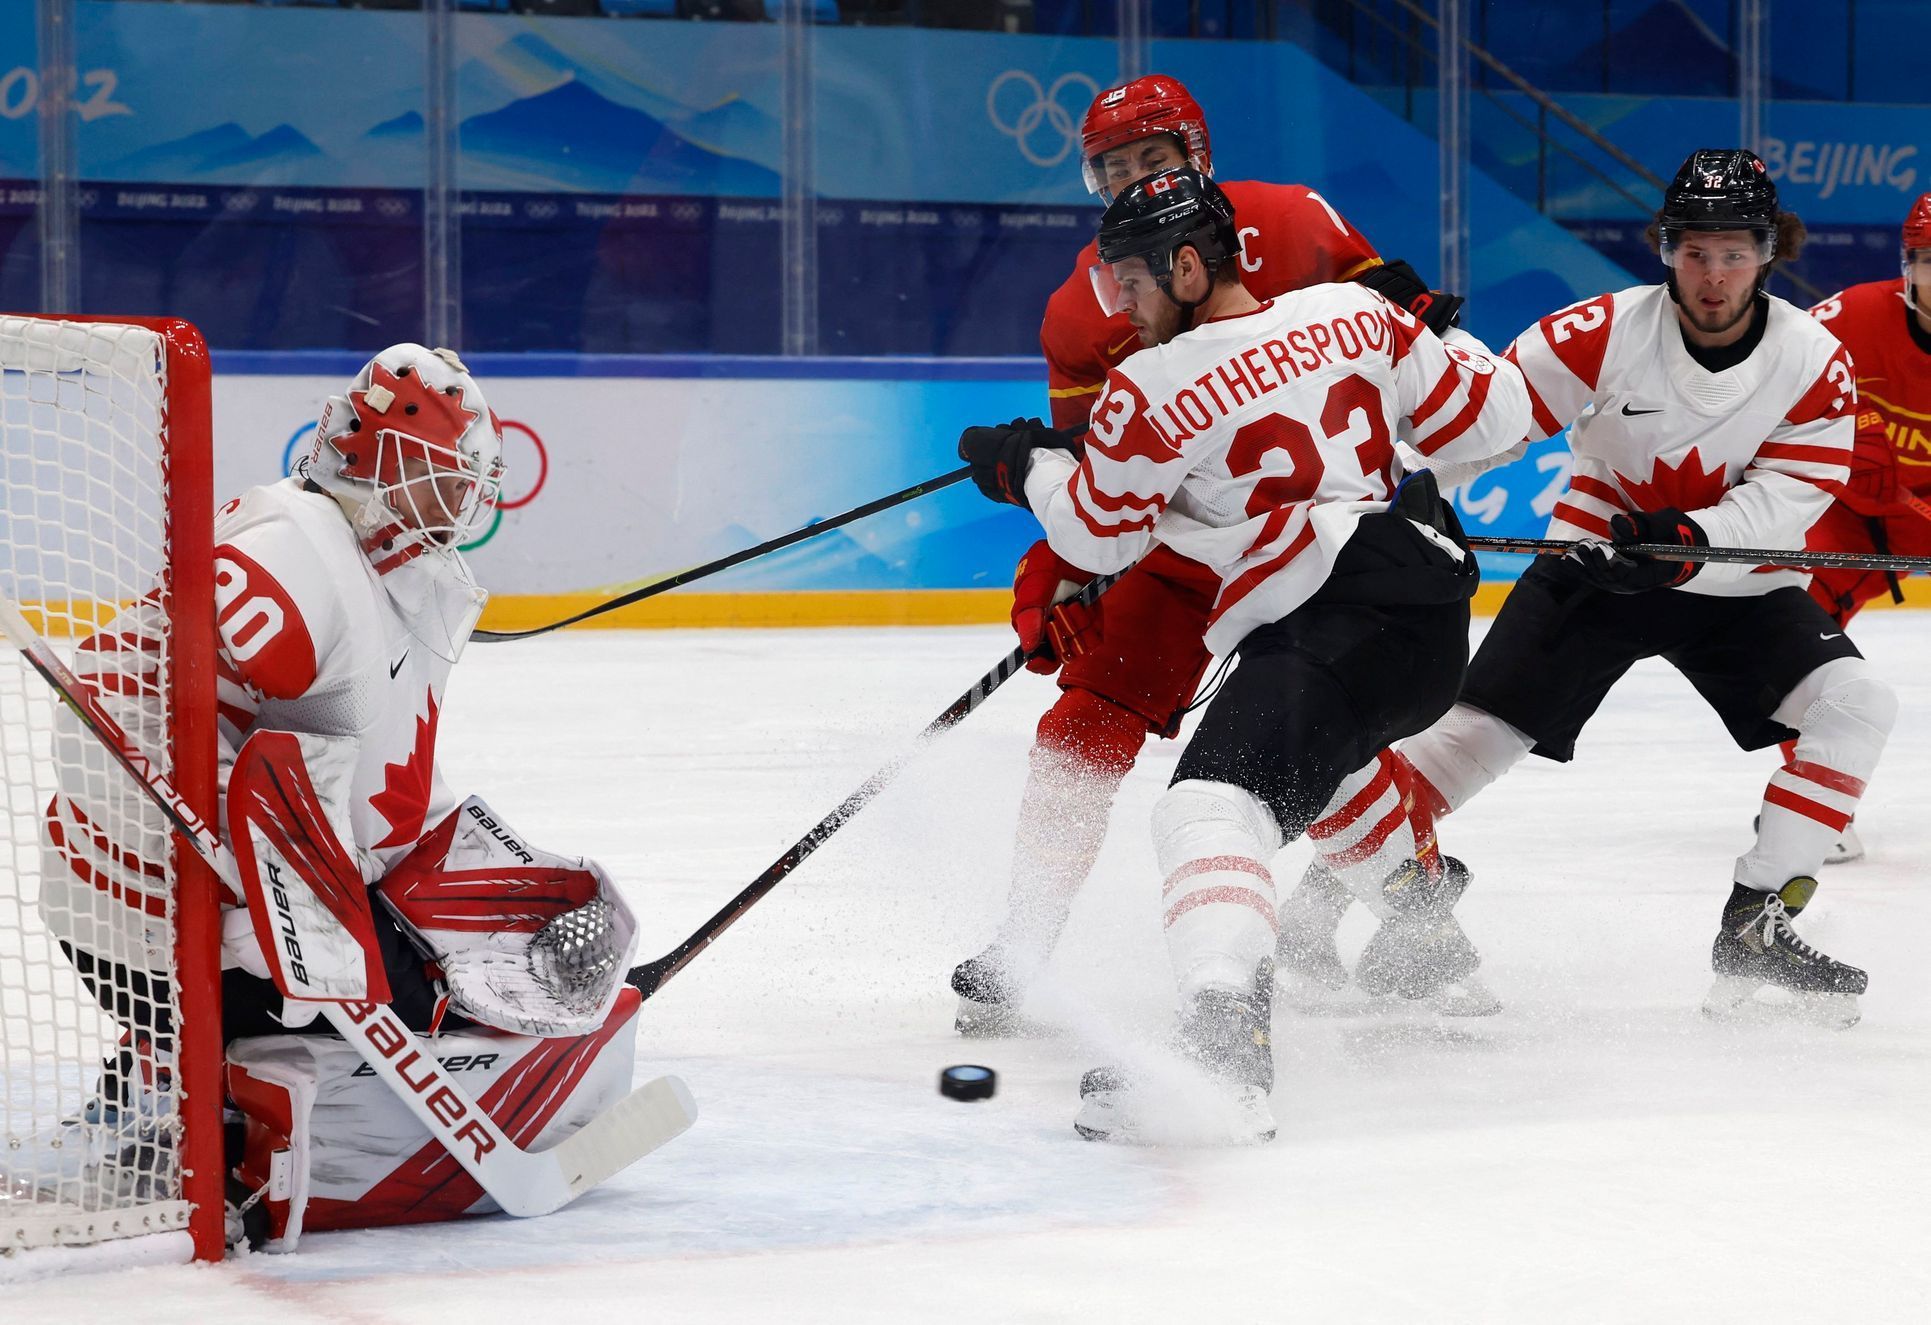 Tyler Wotherspoon v souboji s čínskými hokejisty na ZOH 2022.